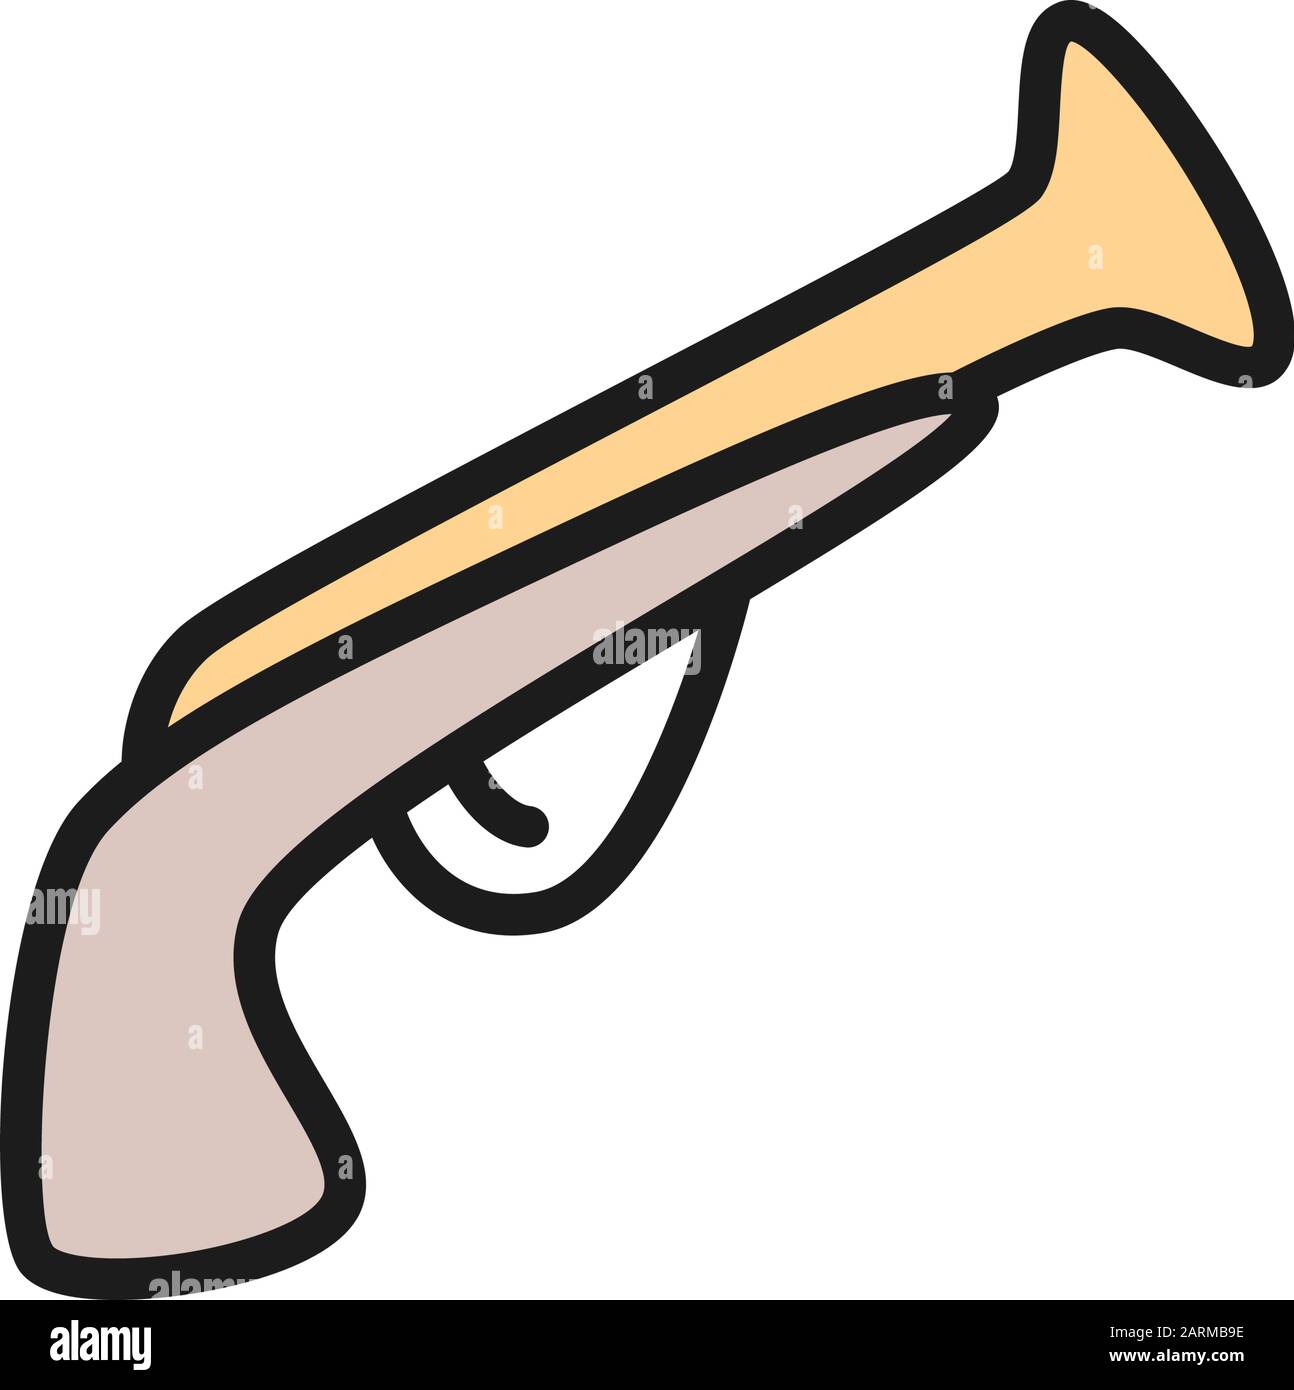 Flintlock-Pistole, Musket-Gewehr, Piratenpistole, Symbol für eine flache Linie der antiken Waffe. Stock Vektor